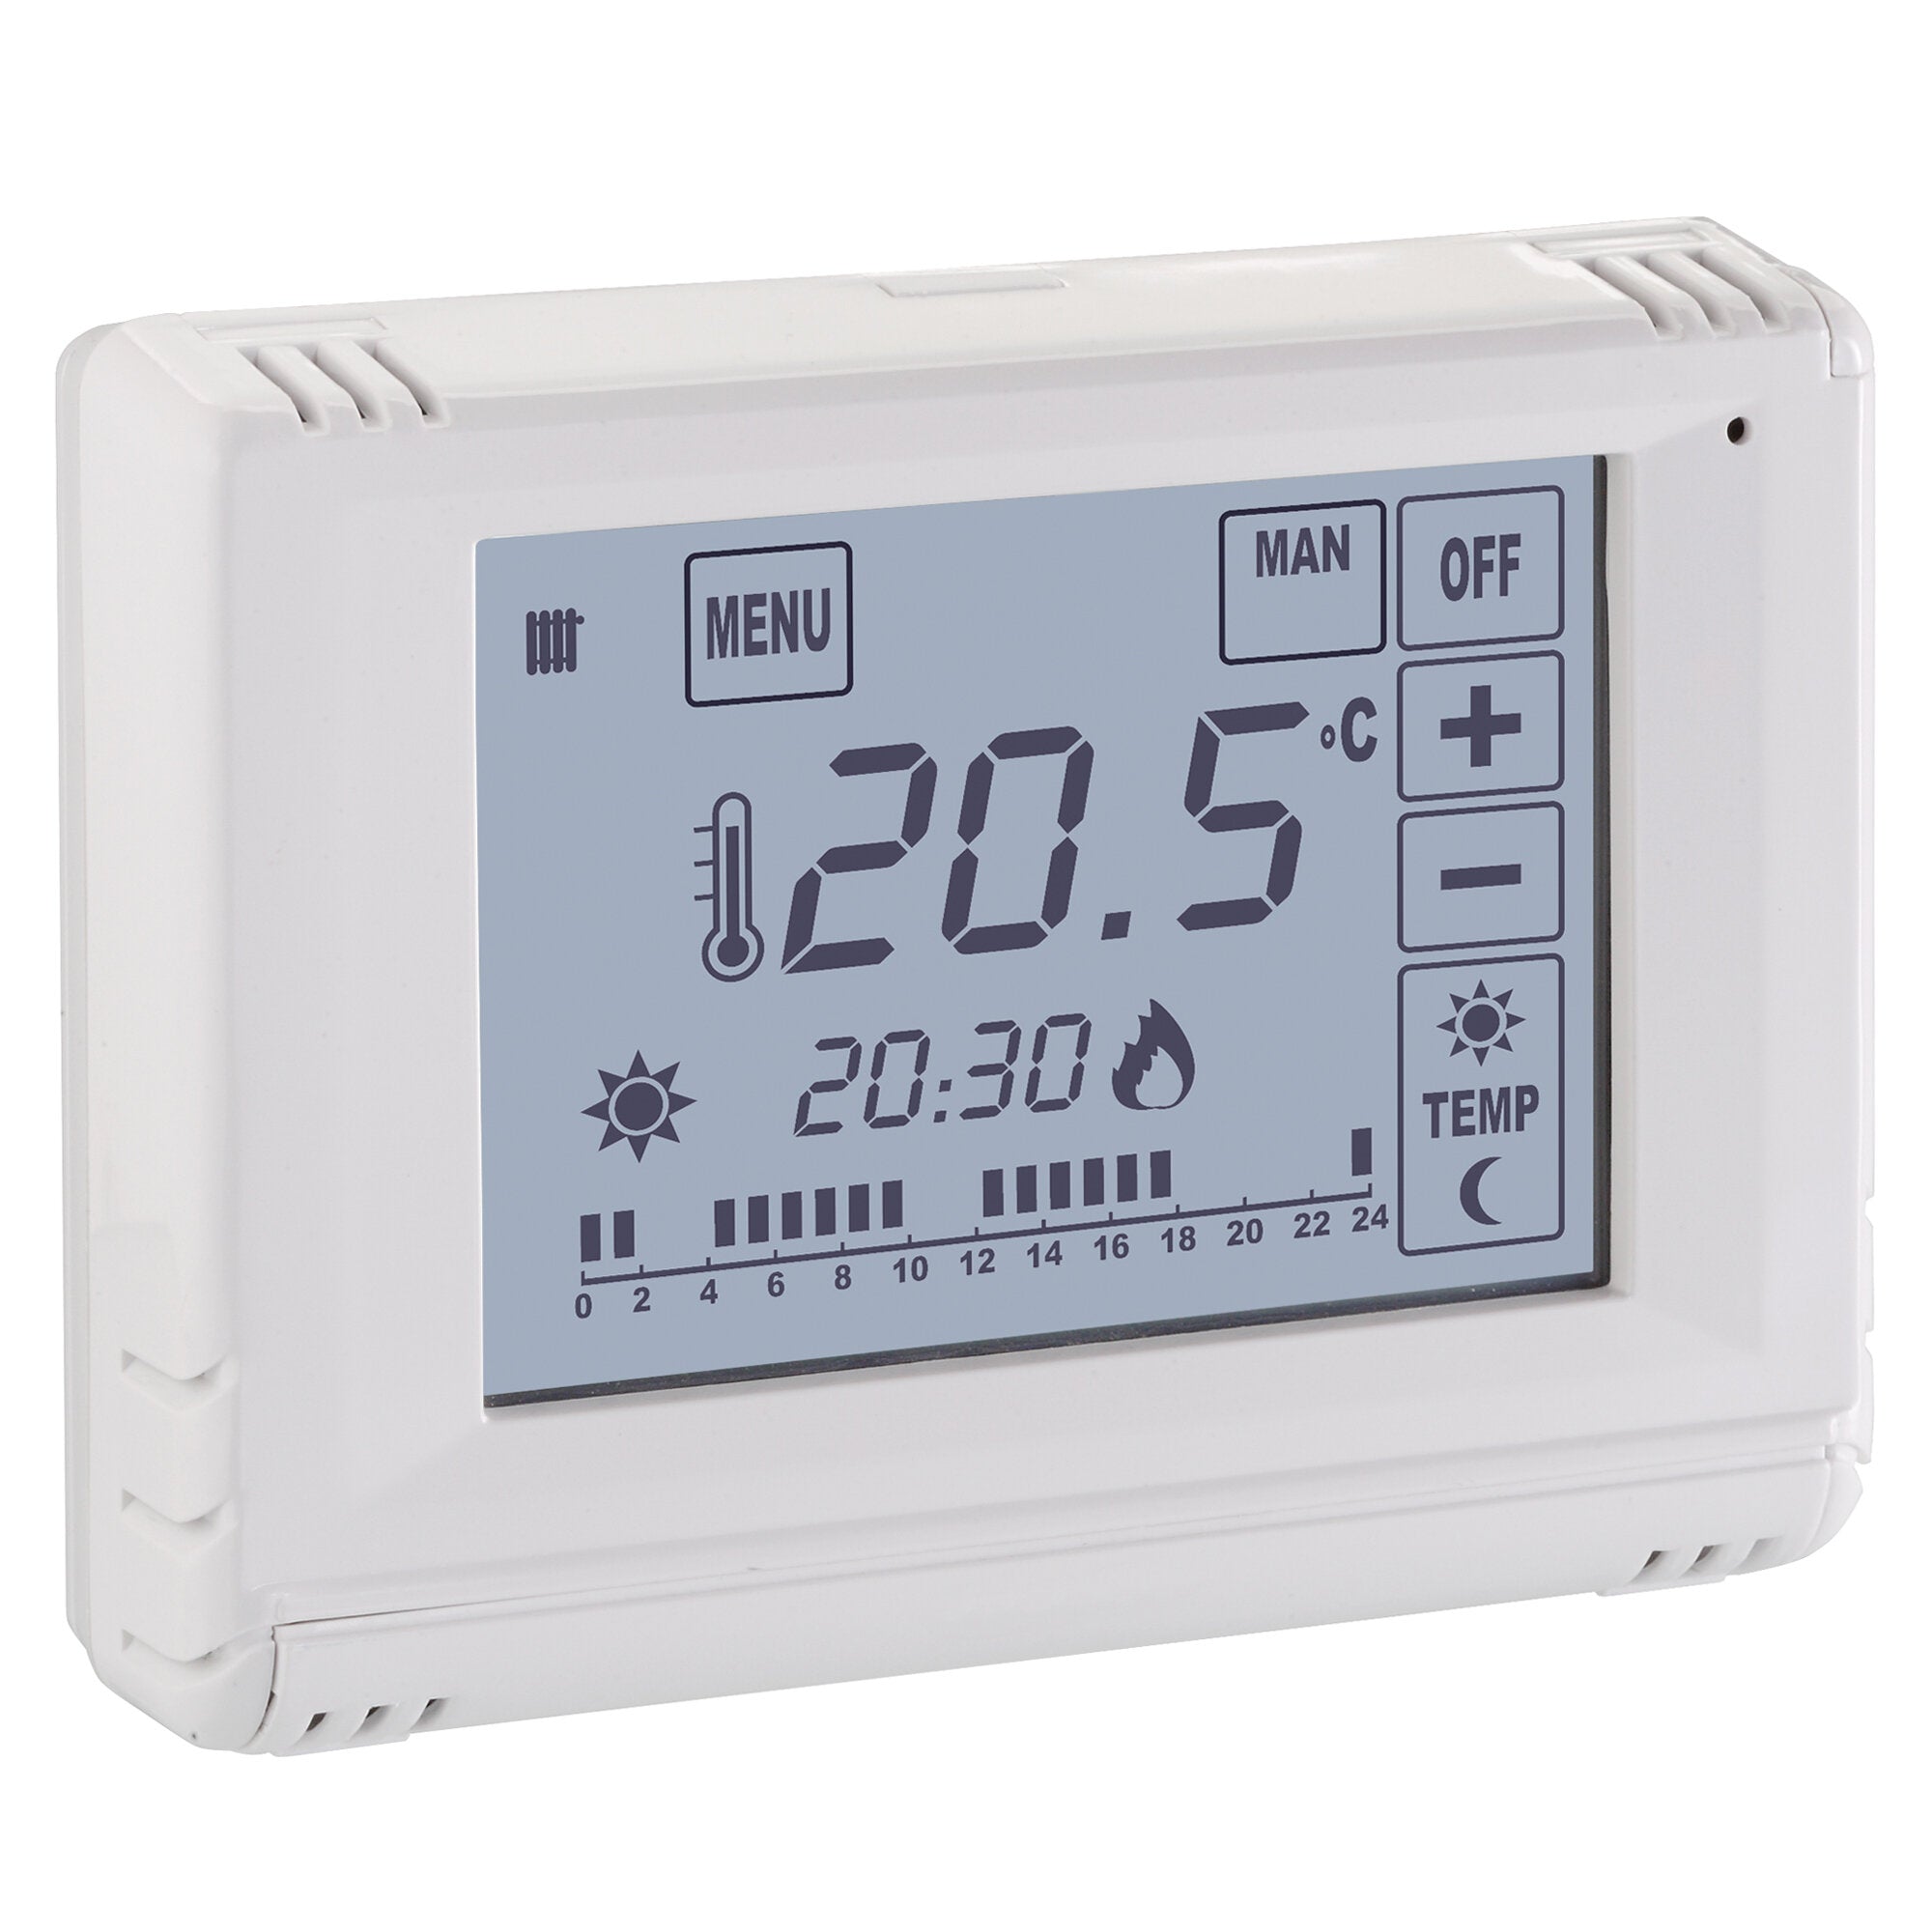 Smarty termostato giornaliero - Versione a 230 Vac: alimentazione da 110 a 230 Vac, 50/60 Hz